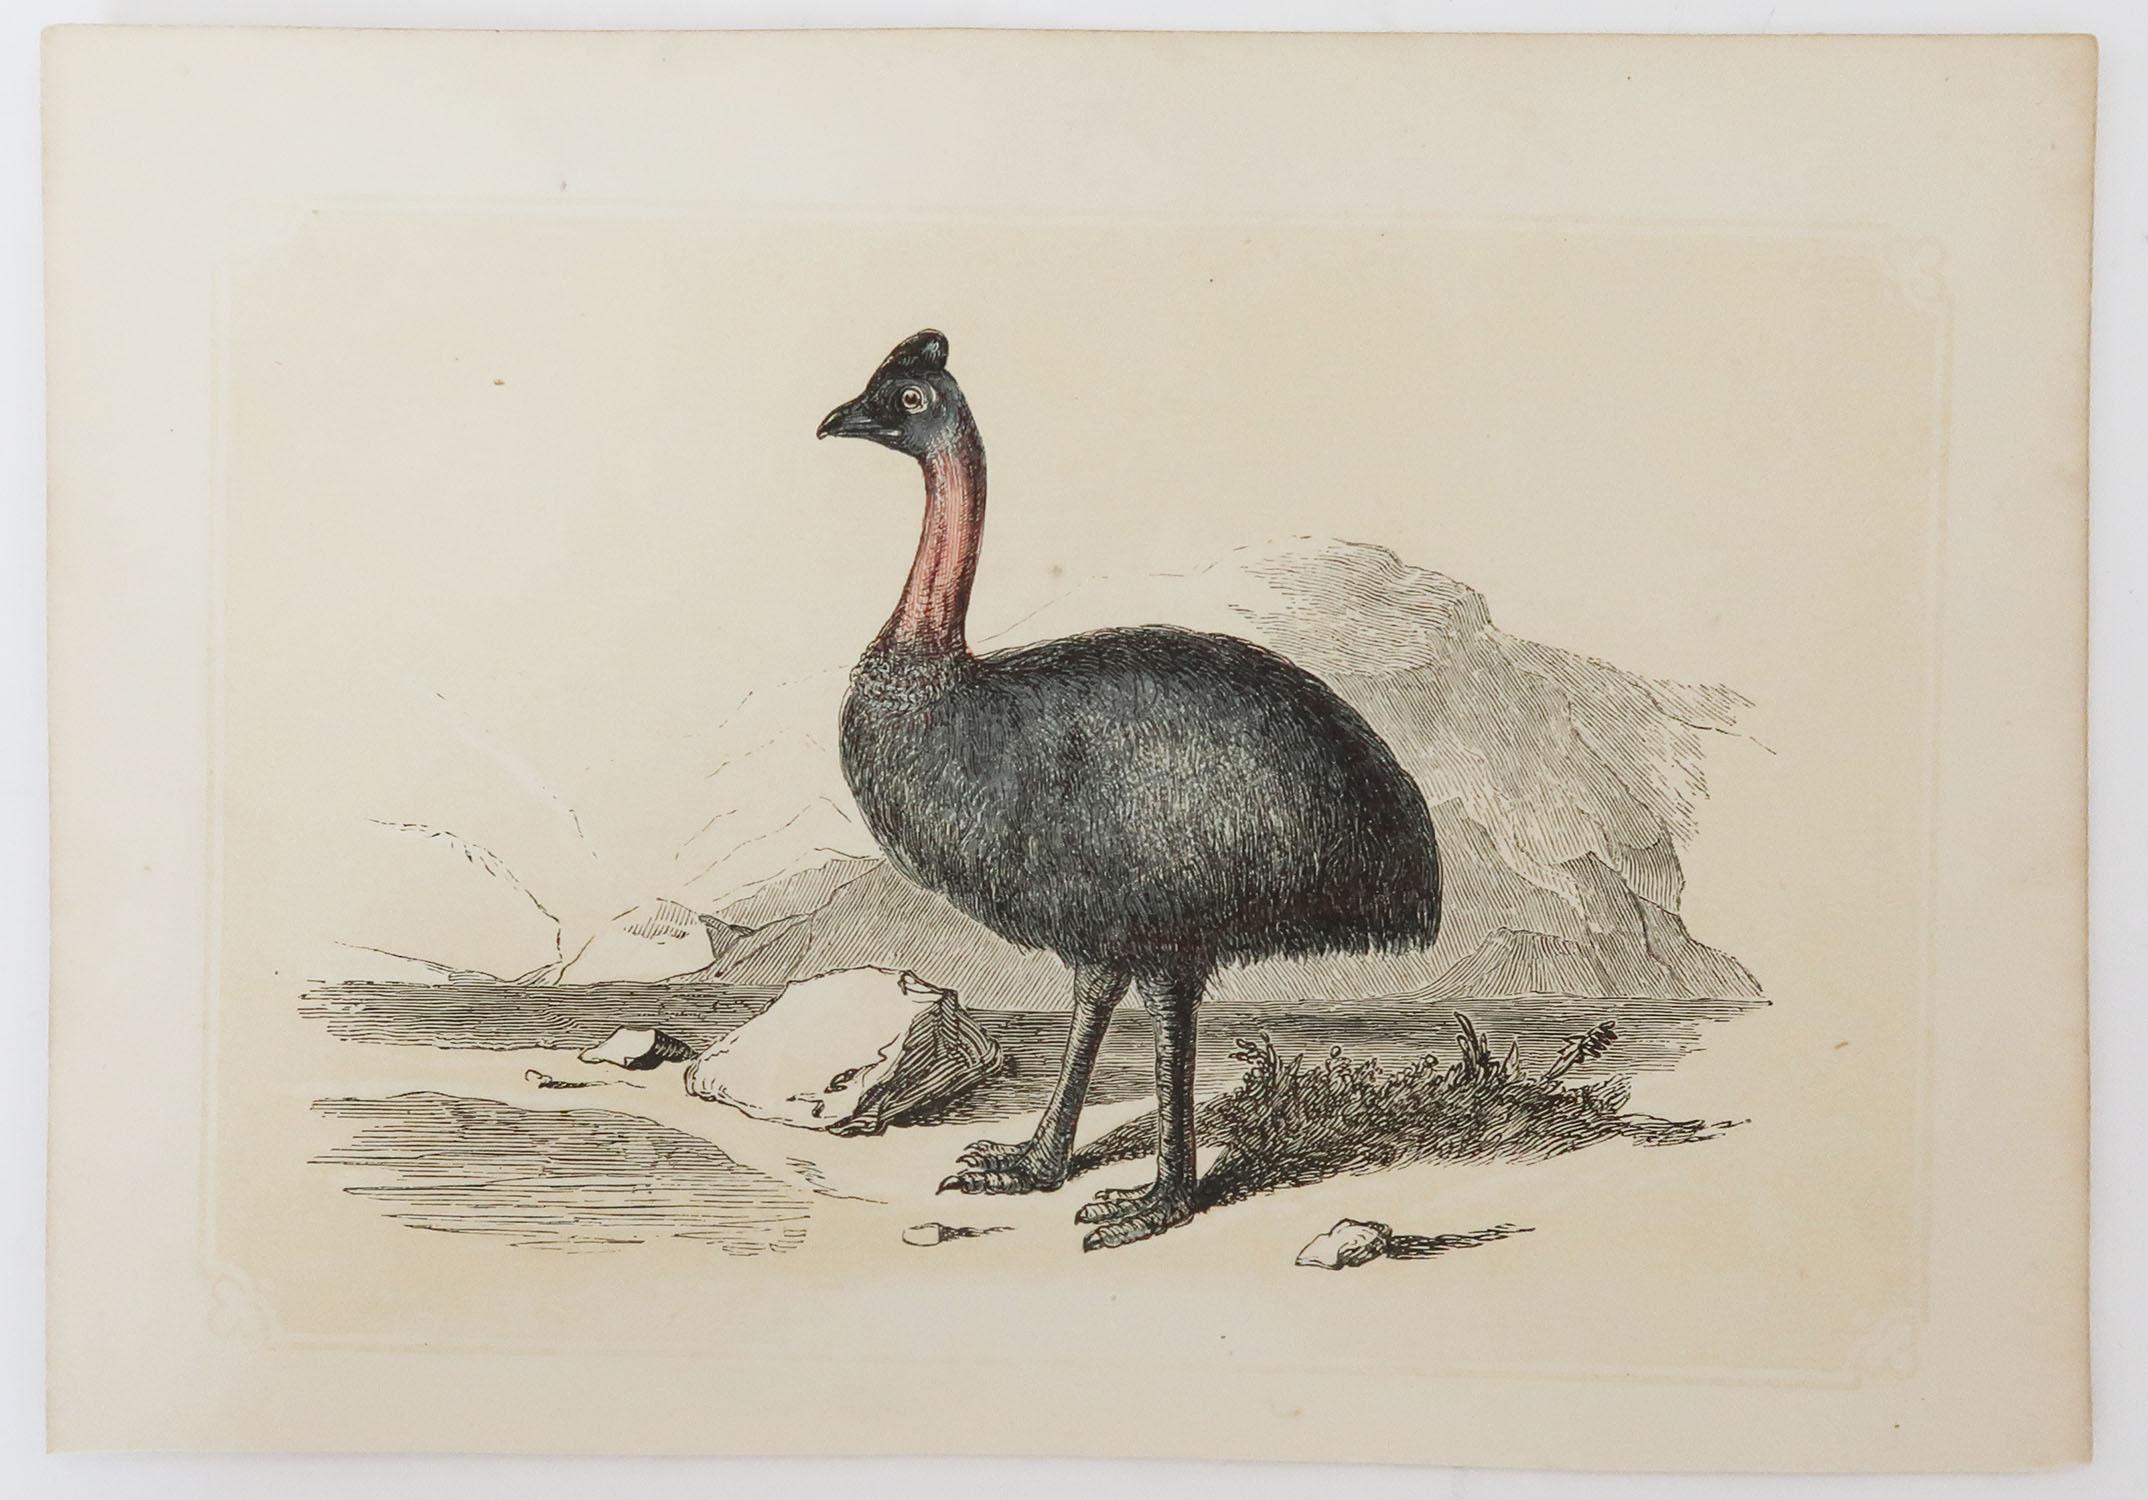 Folk Art Original Antique Bird Print, the Cassowary, Tallis, circa 1850